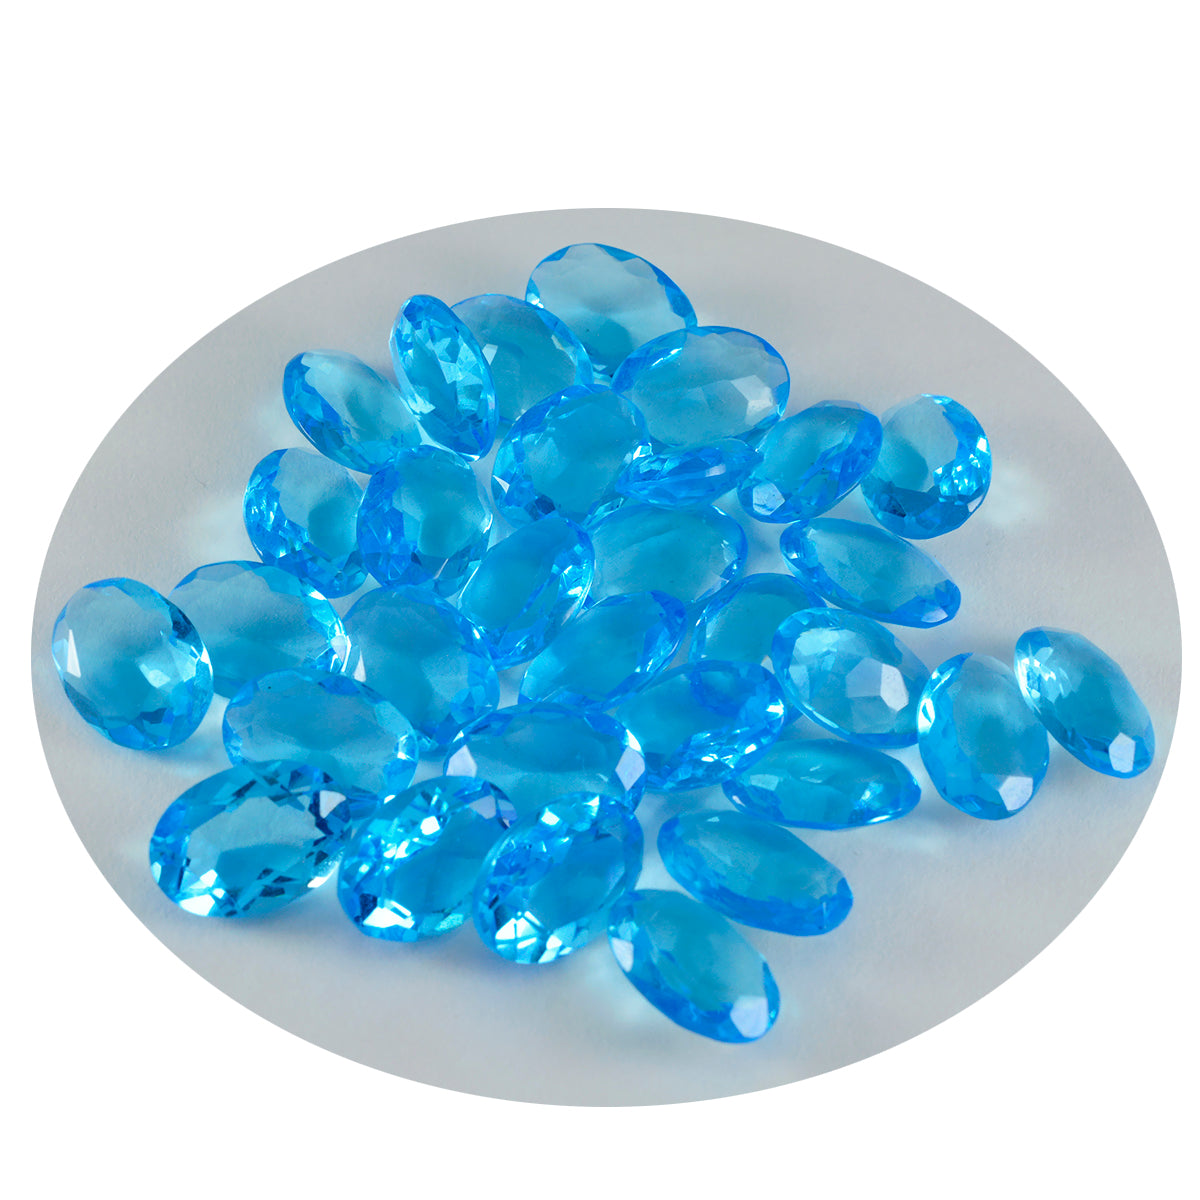 riyogems 1шт синий топаз cz ограненный 7x9 мм овальной формы красивый качественный драгоценный камень